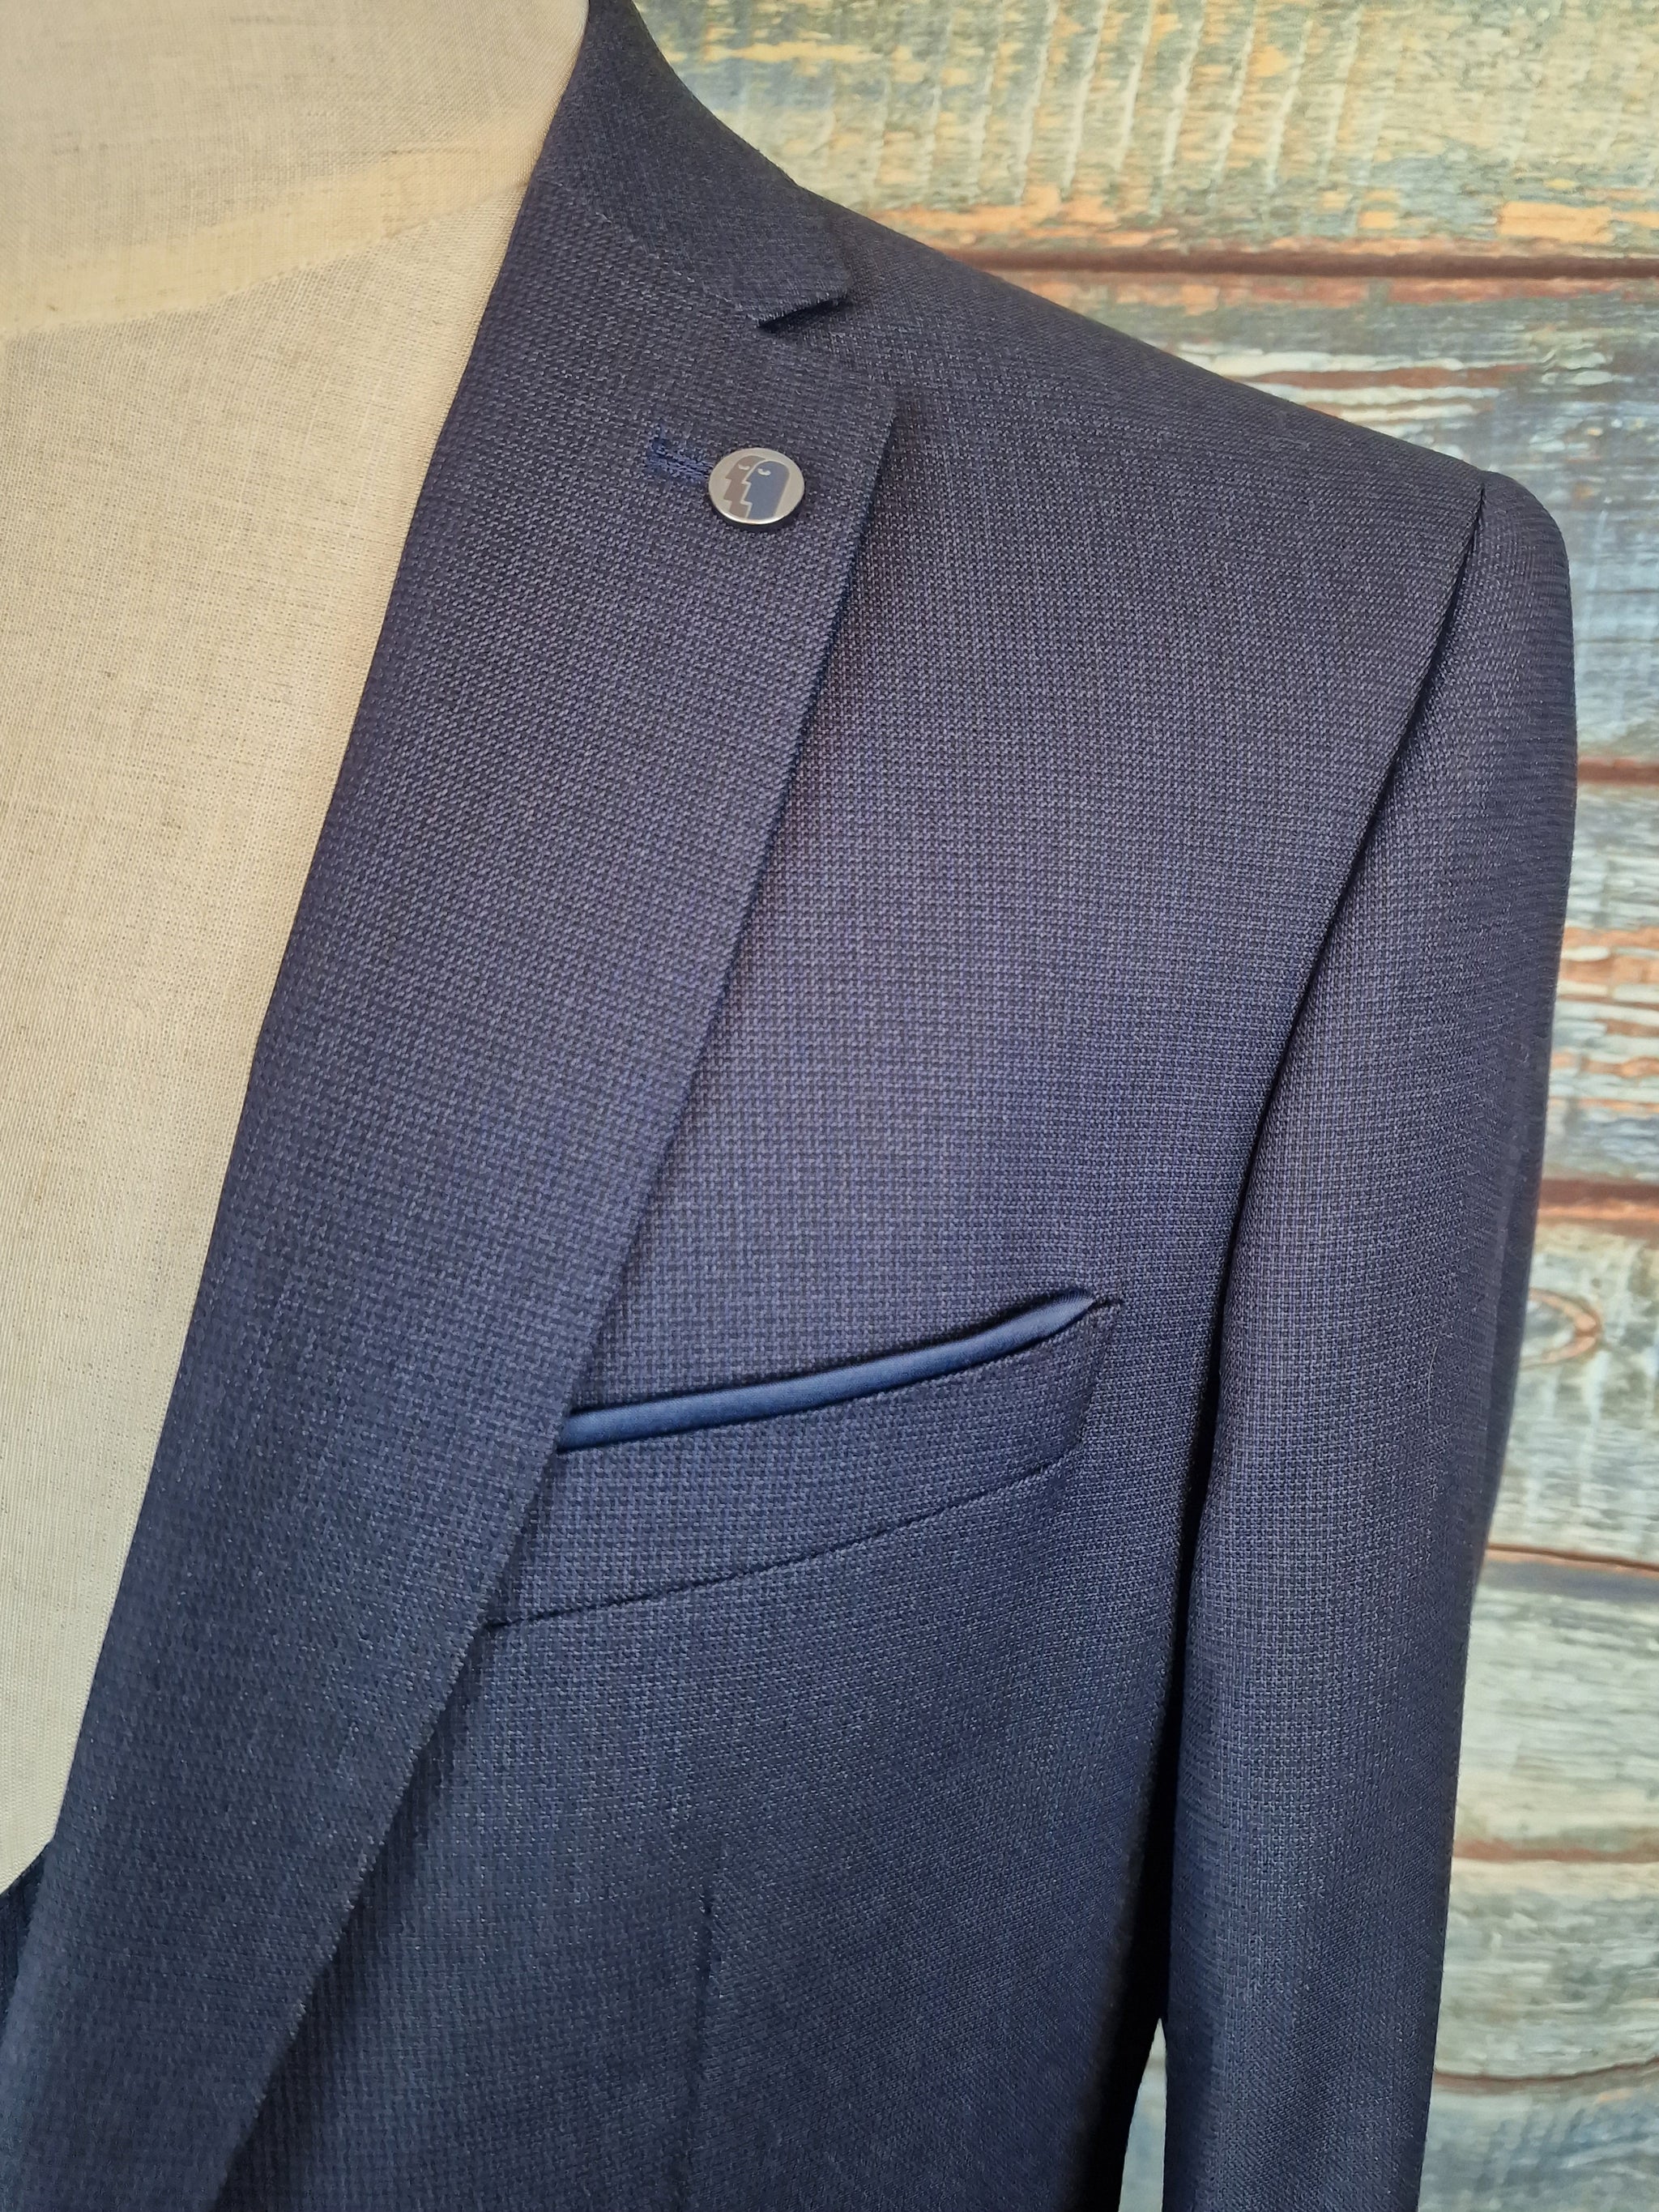 Remus Uomo Slim Fit blue micro check 3 Piece Suit